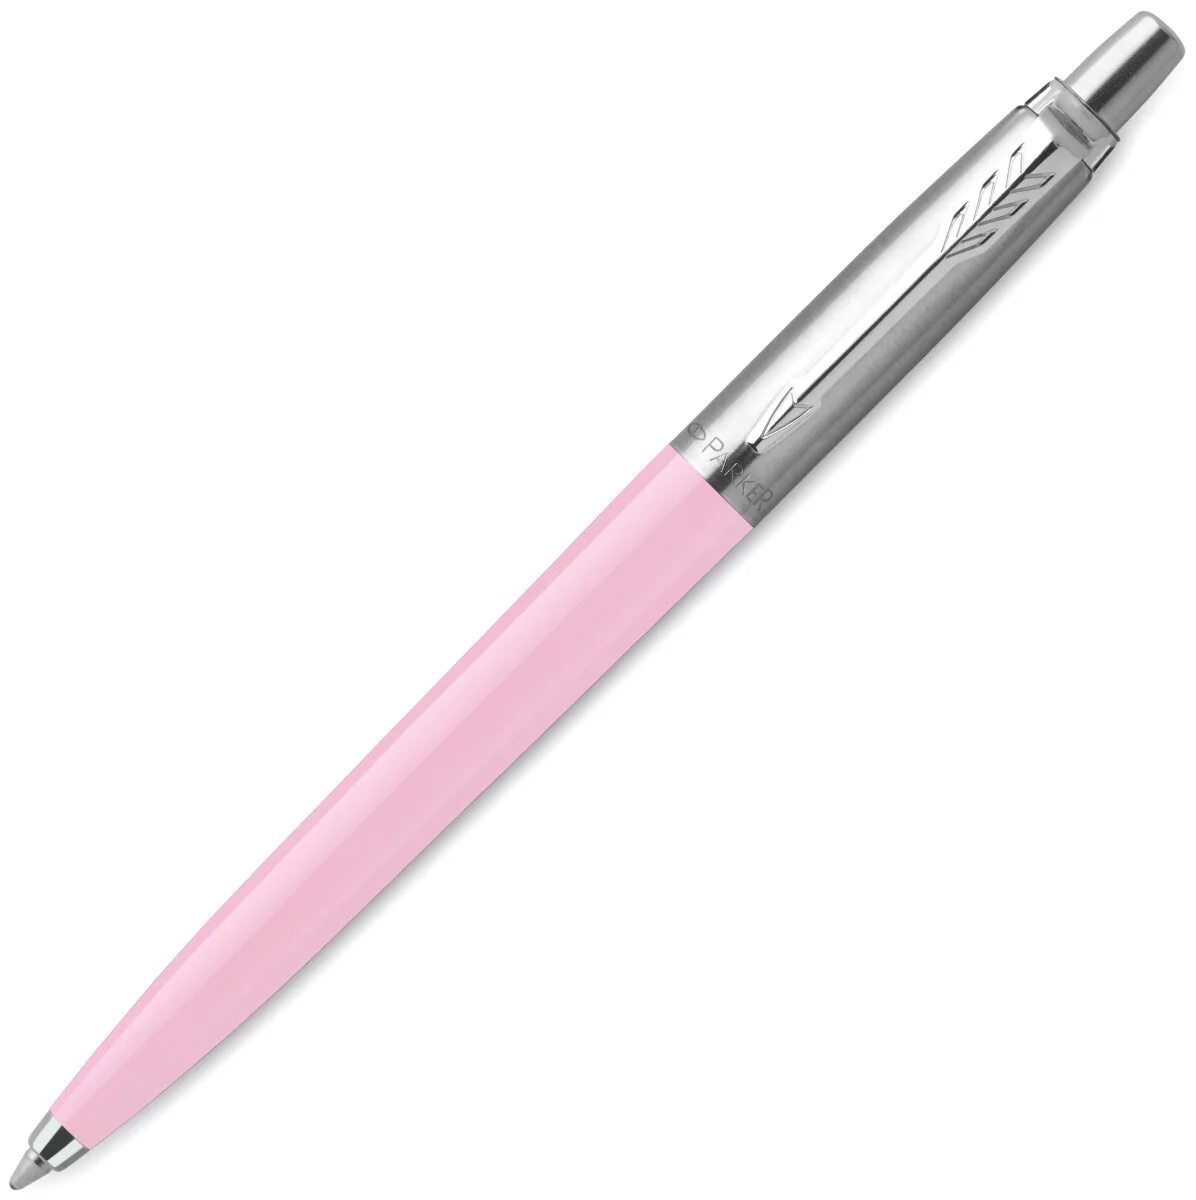 Шариковые ручки оригинал. Parker шариковая ручка Jotter Luxe k177. Ручки Parker Jotter k60. Ручка Паркер r2123147. Parker Jotter Original - k60 Baby Pink, шариковая ручка, m.